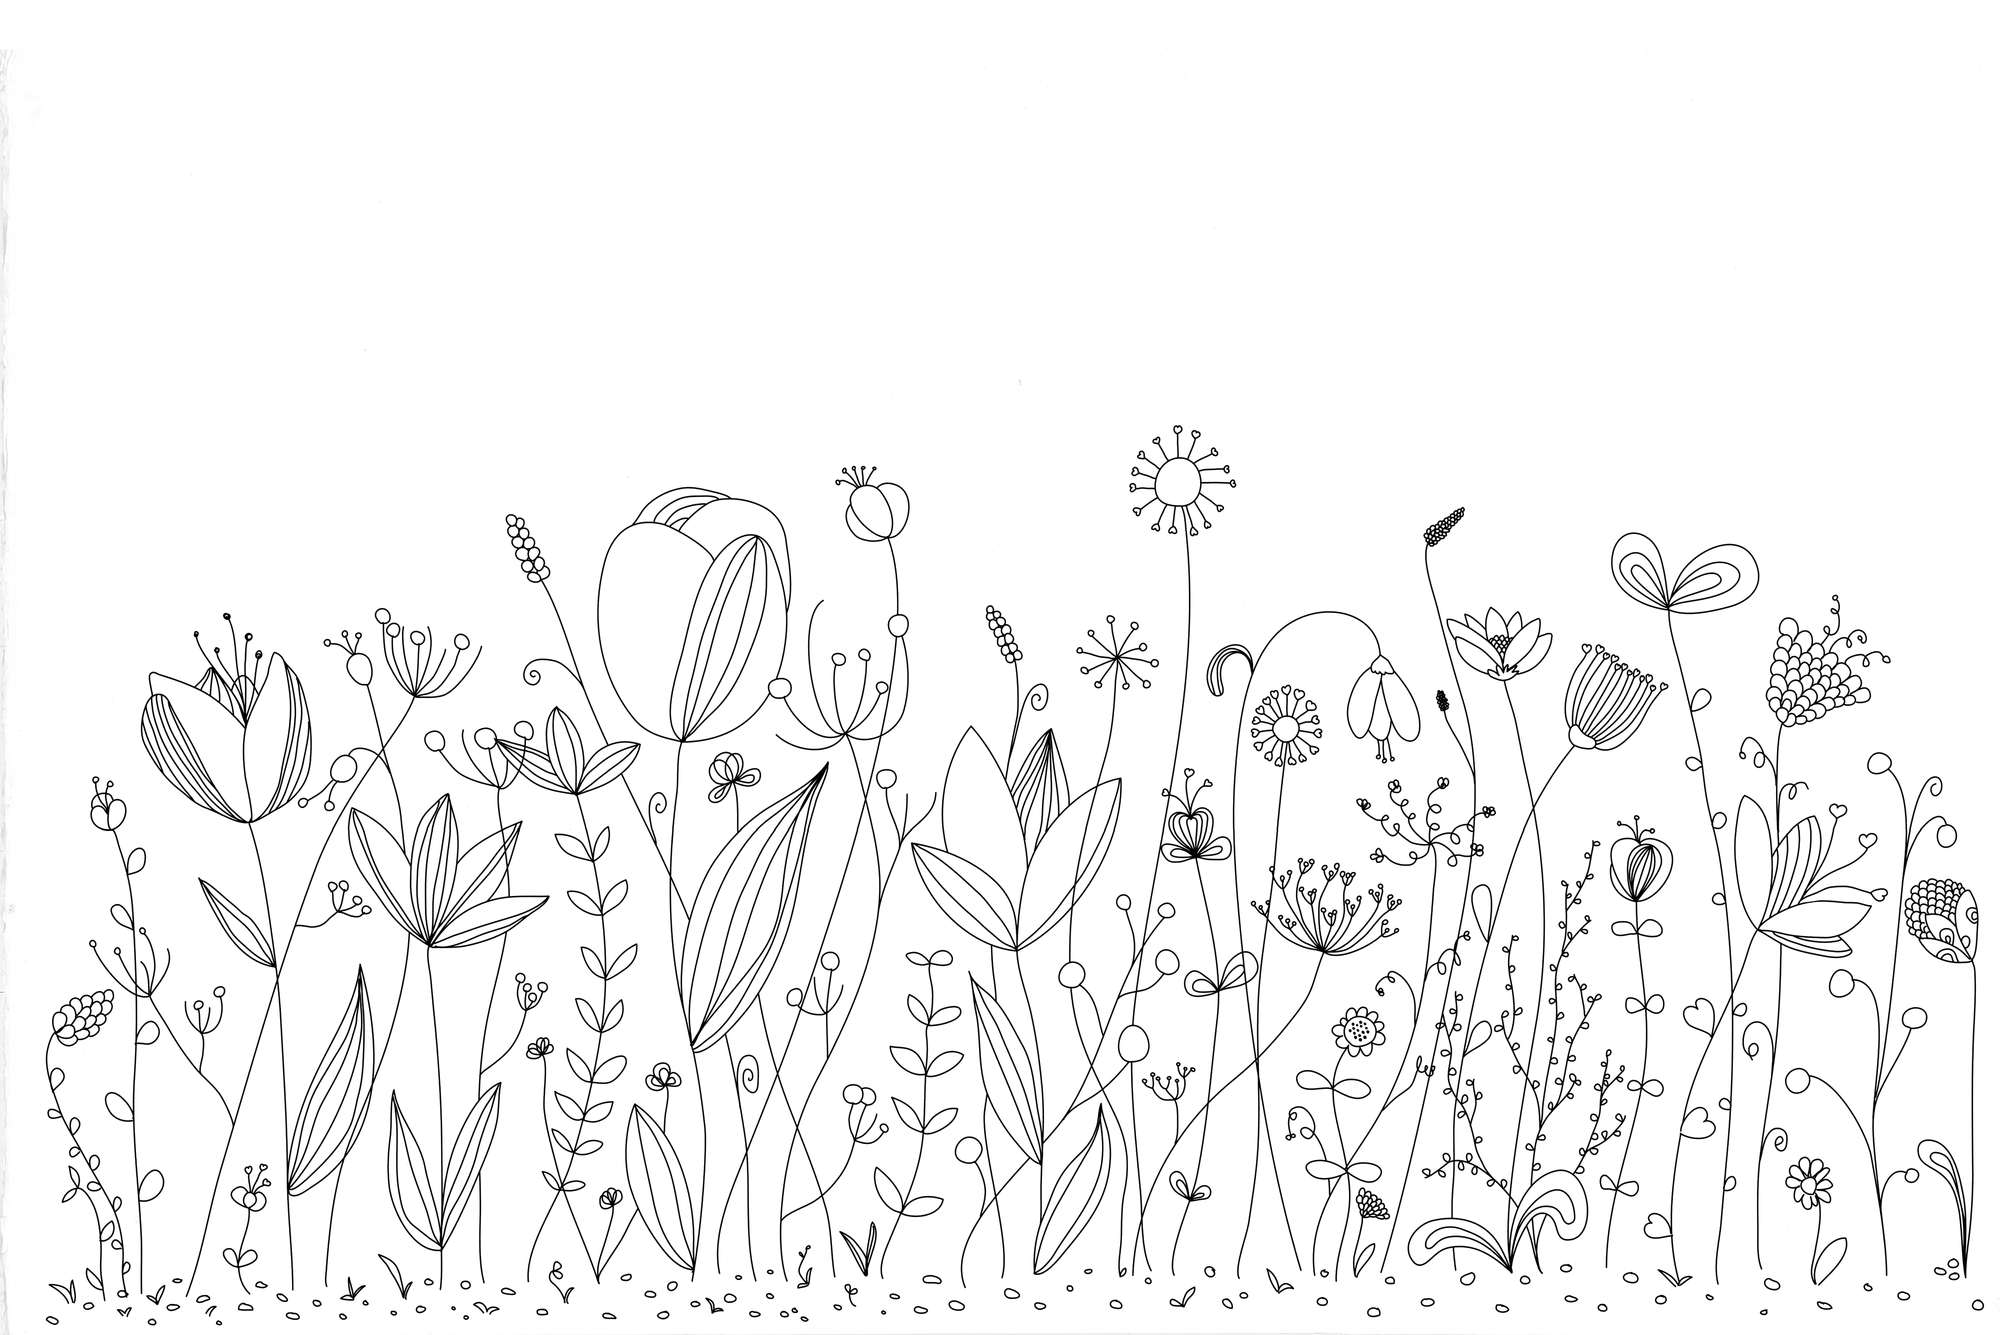             Kinder Fototapete mit schwarz weiß gezeichneten Blumen auf Premium Glattvlies
        